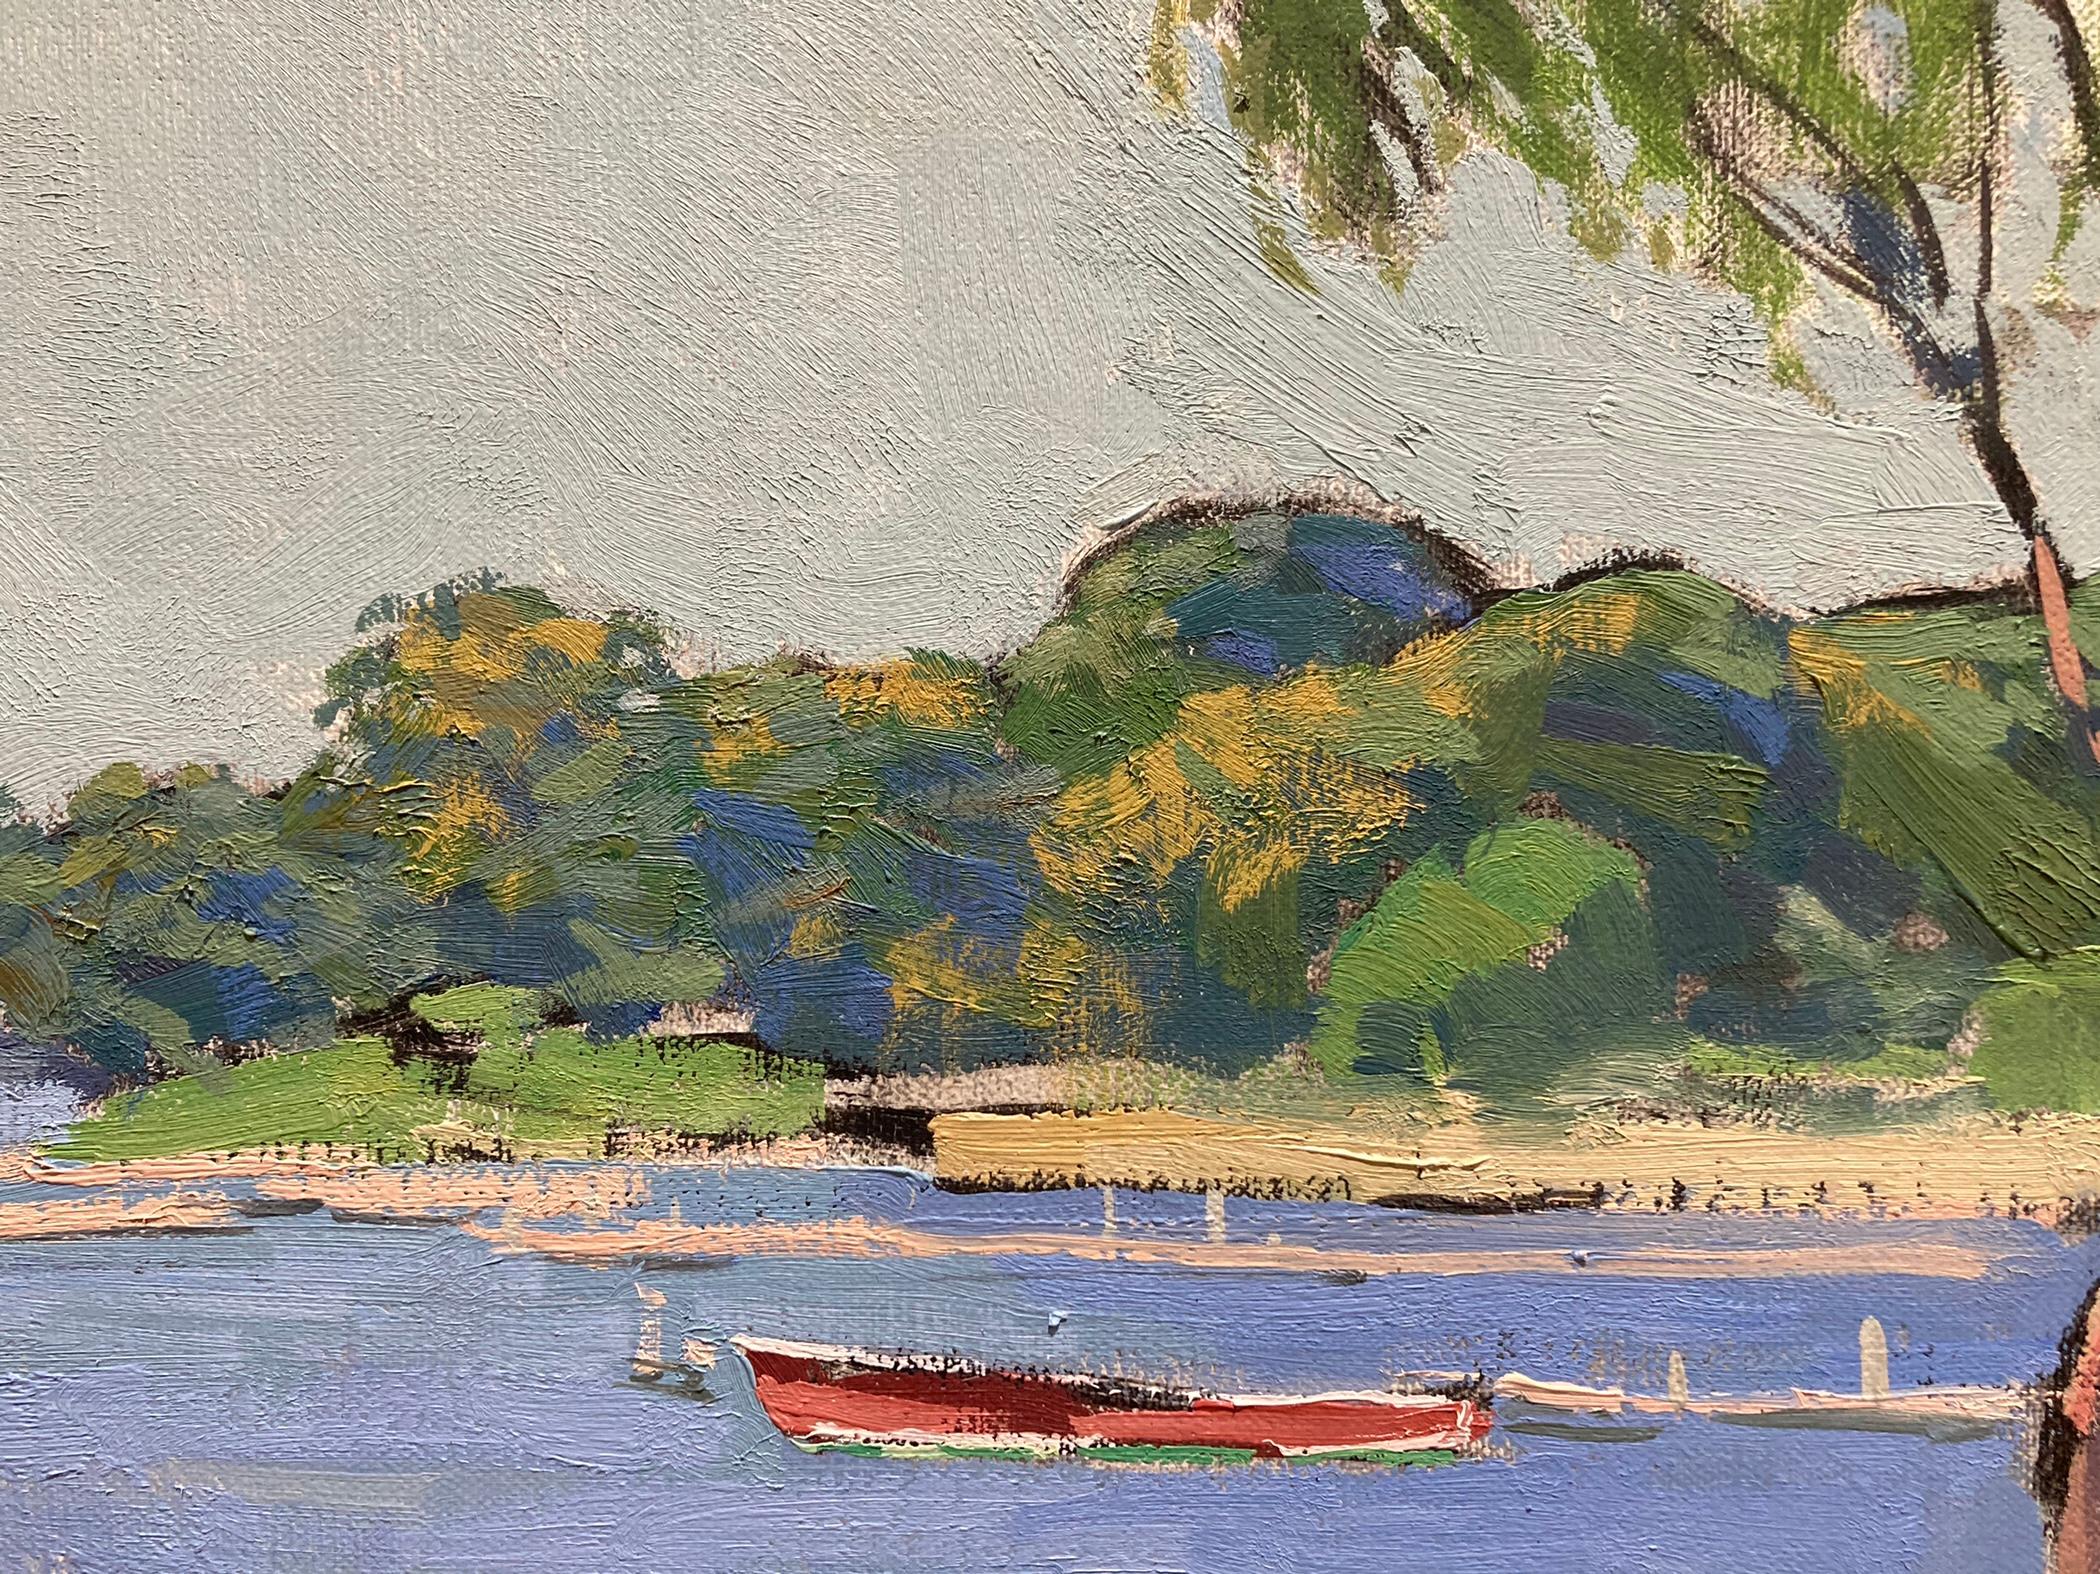 Sunshine on Dering Harbor Village - Impressionist Painting by Viktor Butko